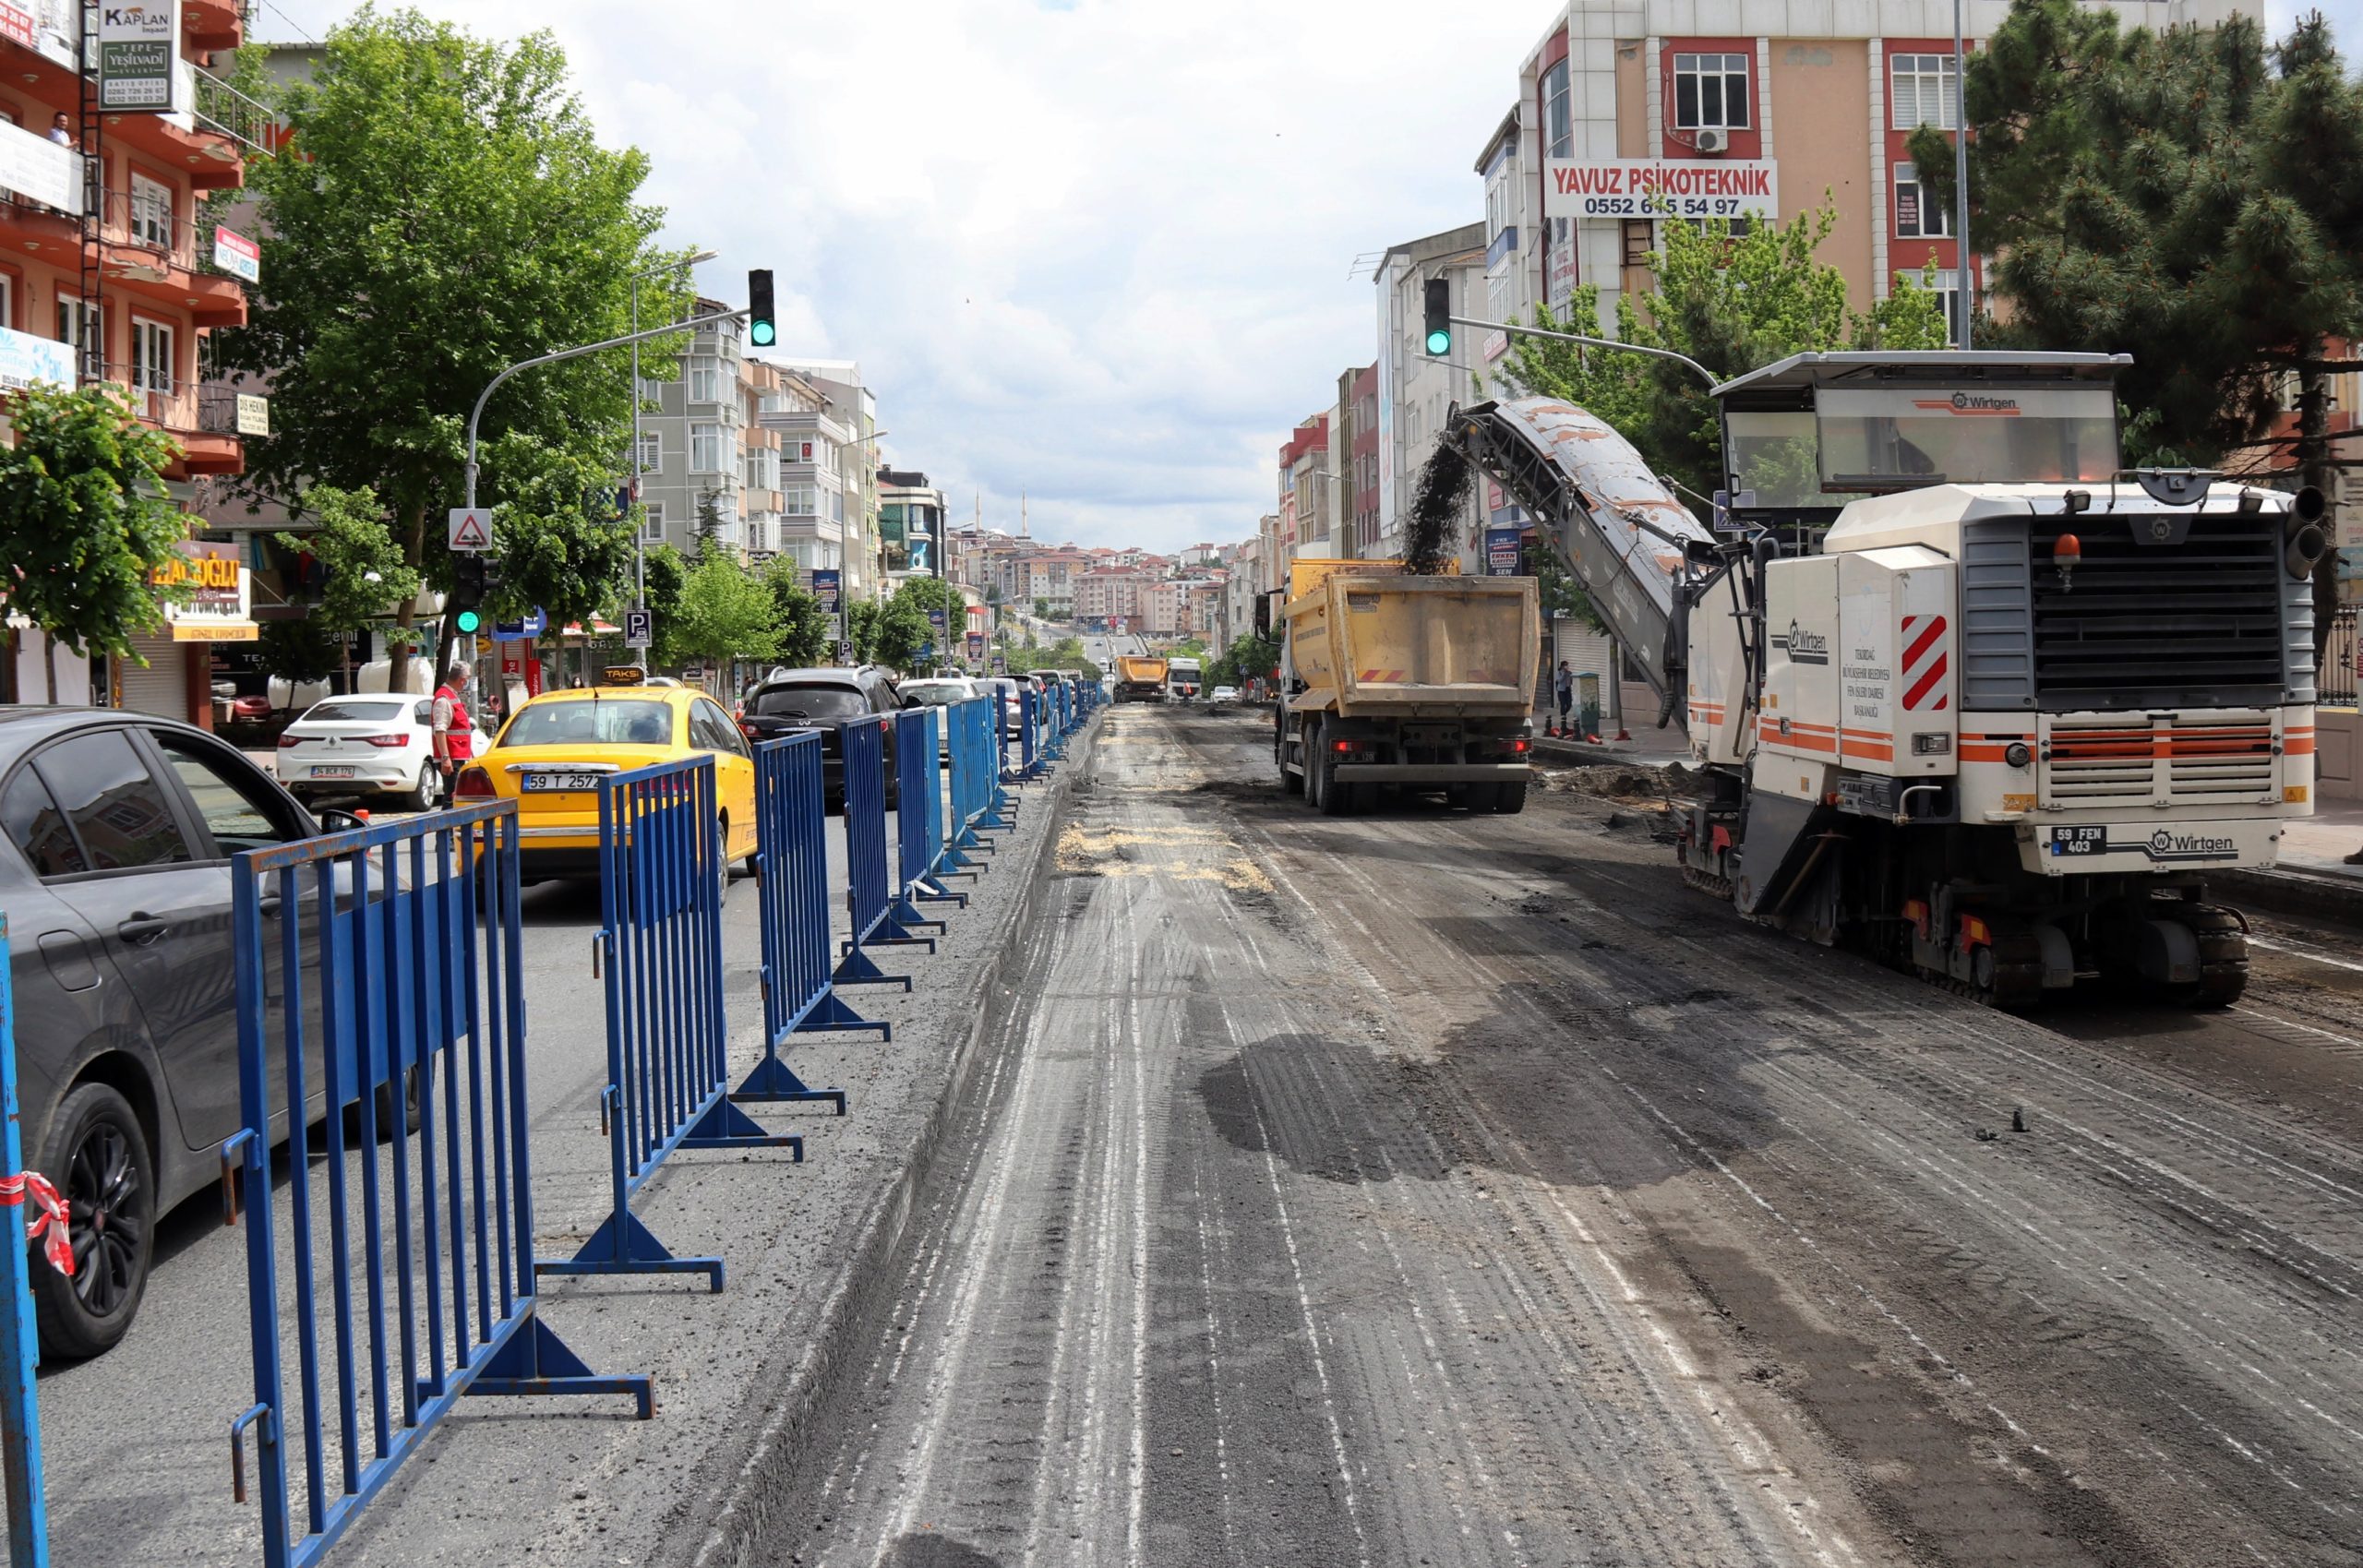  Çerkezköy’de Kentsel Tasarım ve Peyzaj Uygulama Projesi Başladı